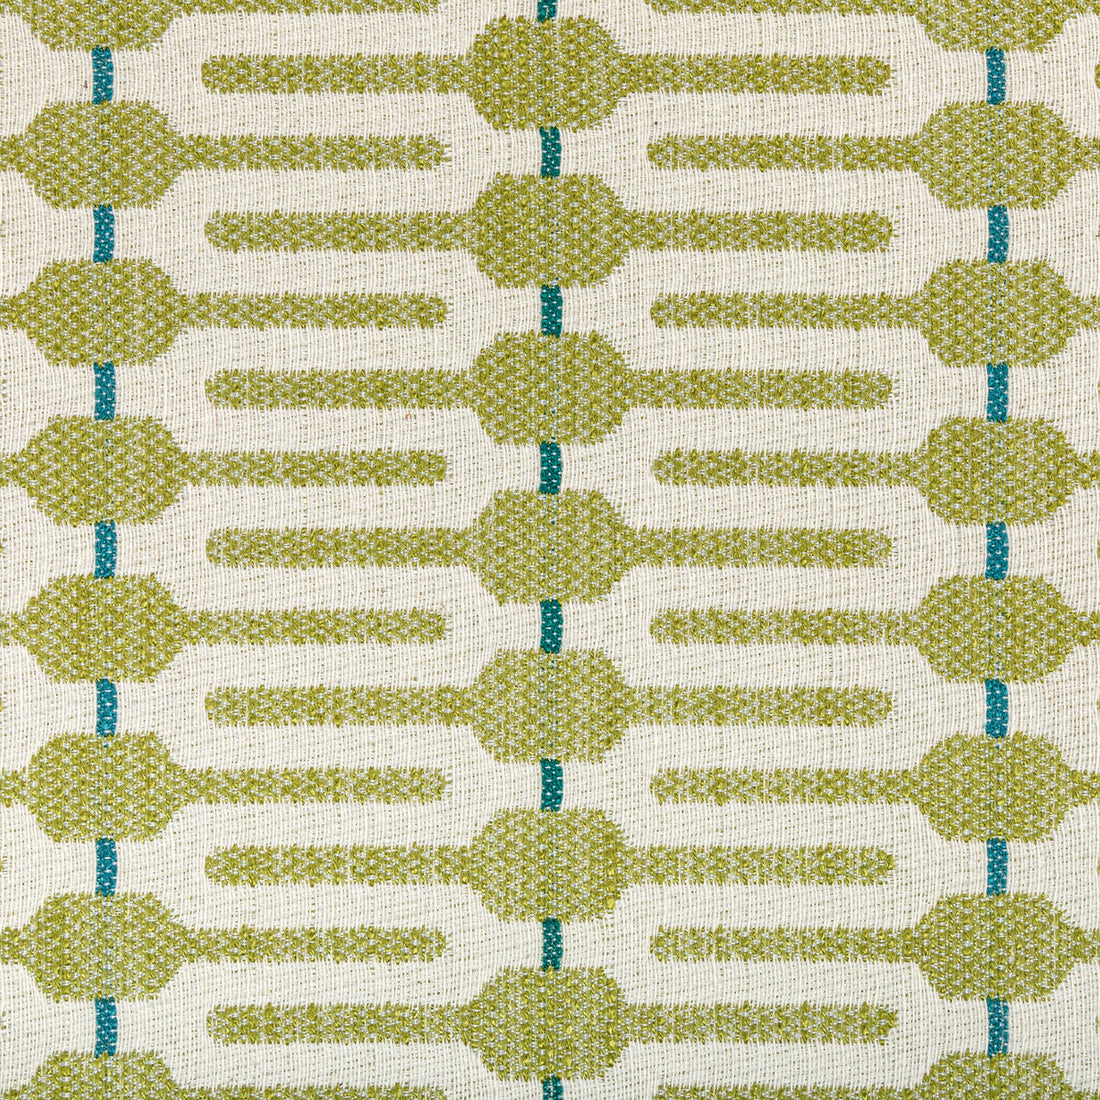 Kravet Design fabric in 36681-335 color - pattern 36681.335.0 - by Kravet Design